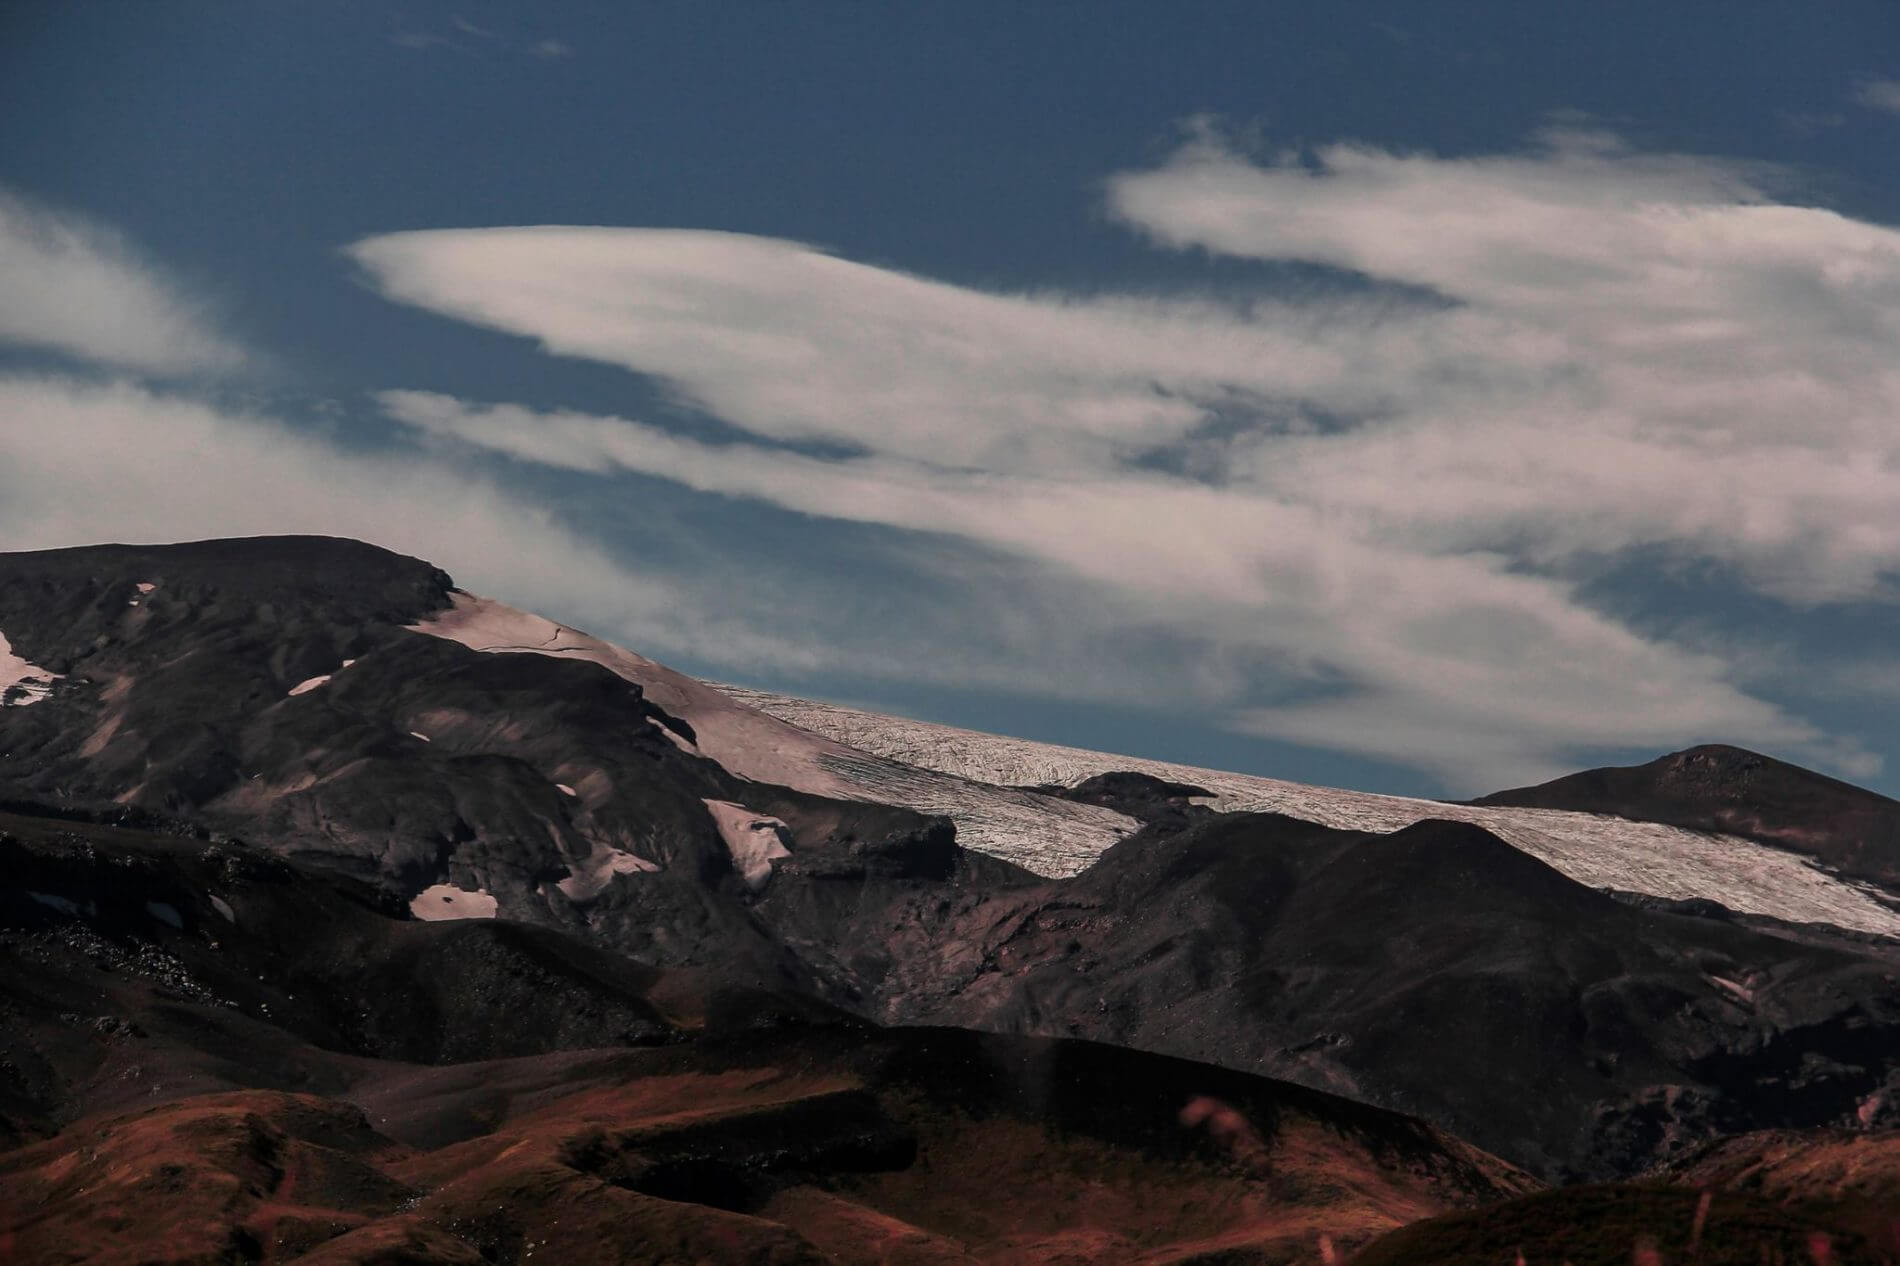 Cine outdoor y trekking al volcán Mocho Choshuenco: atrapados en lo salvaje